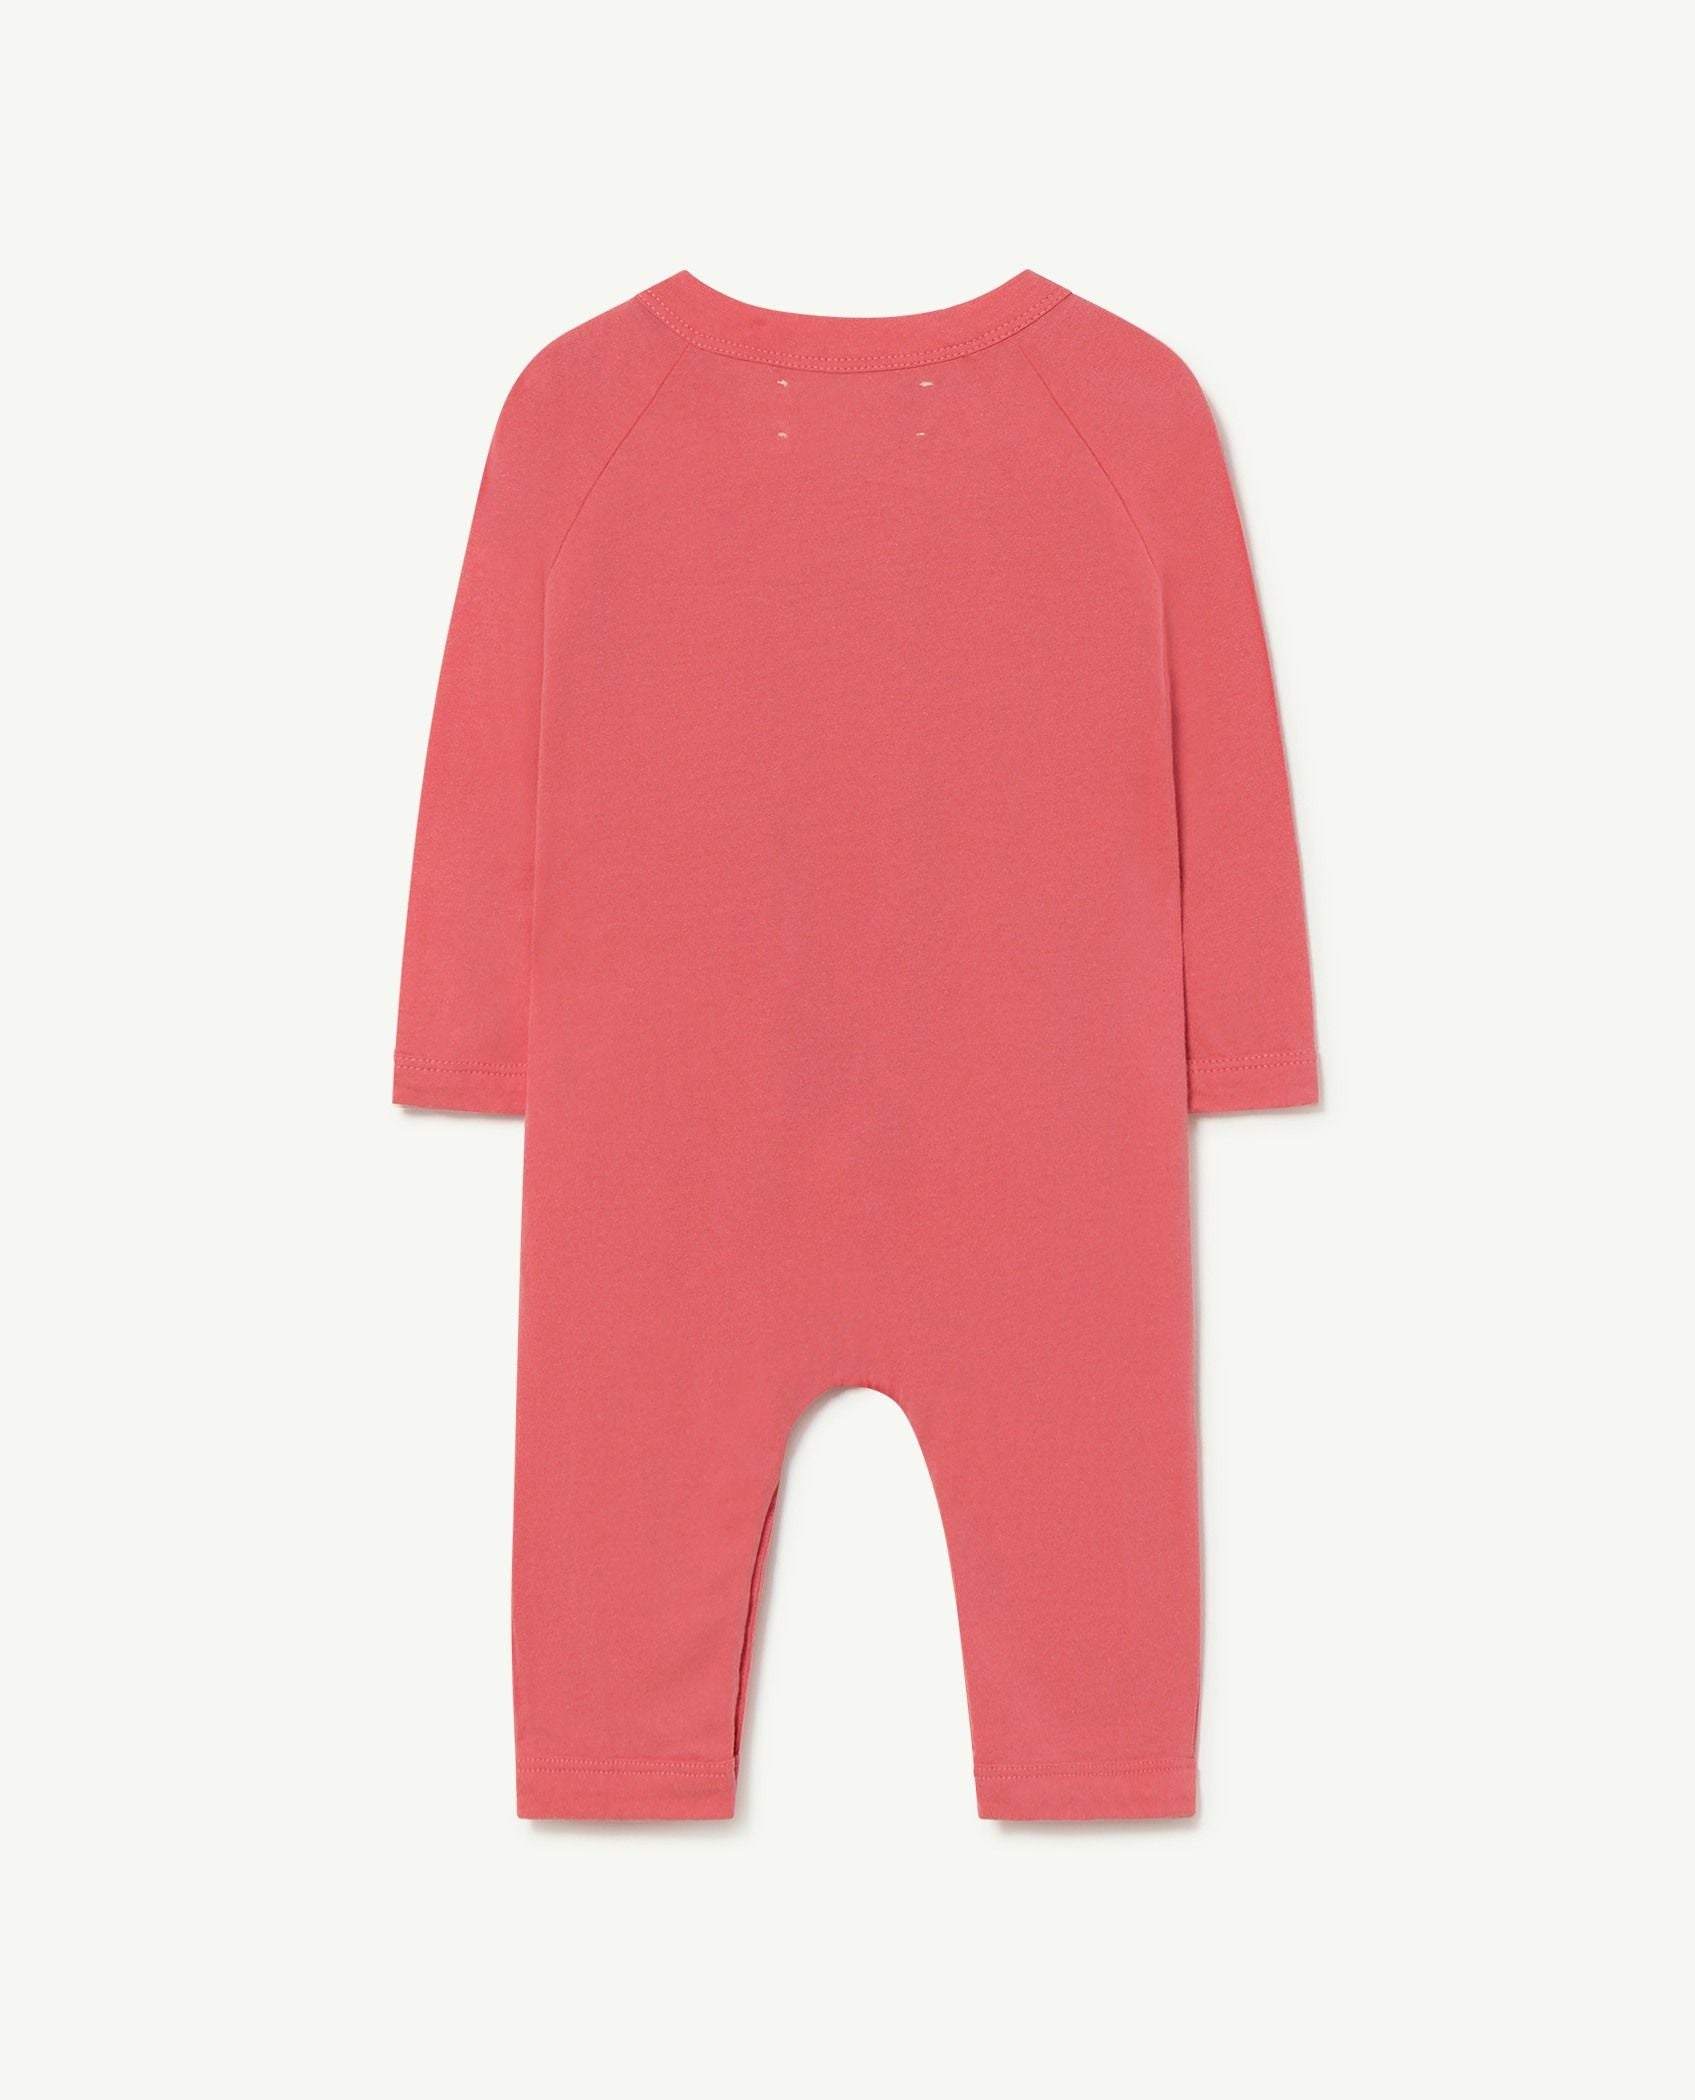 Baby Boys & Girls Pink Printed Babysuit